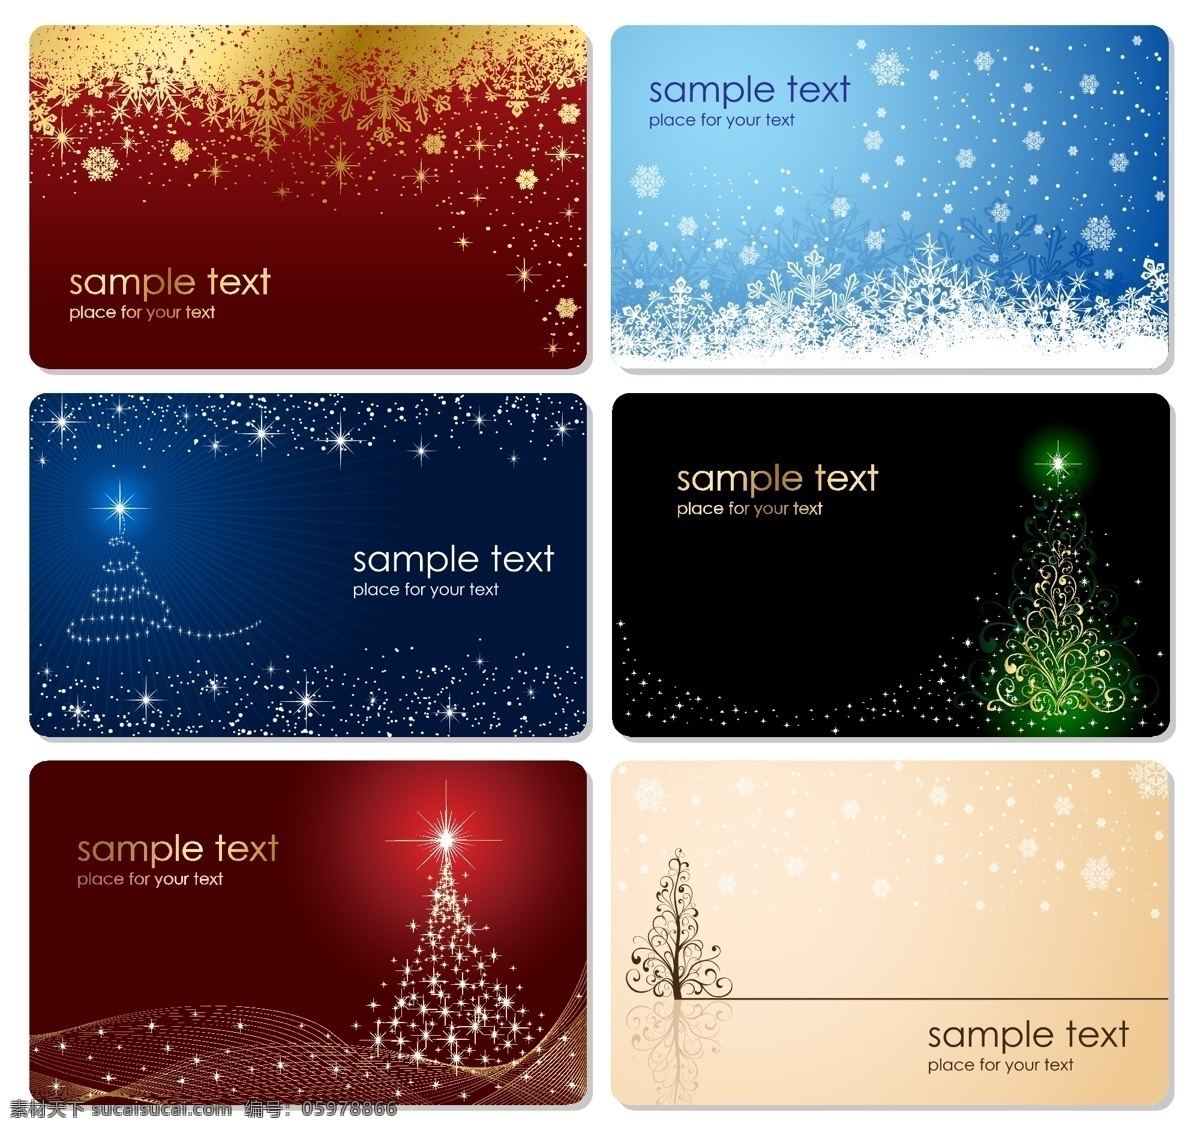 圣诞节 卡片 背景 矢量 卡片背景 名片设计 名片背景 圣诞主题 下雪 雪花 圣诞树 红彩带 蝴蝶结 矢量素材 红色